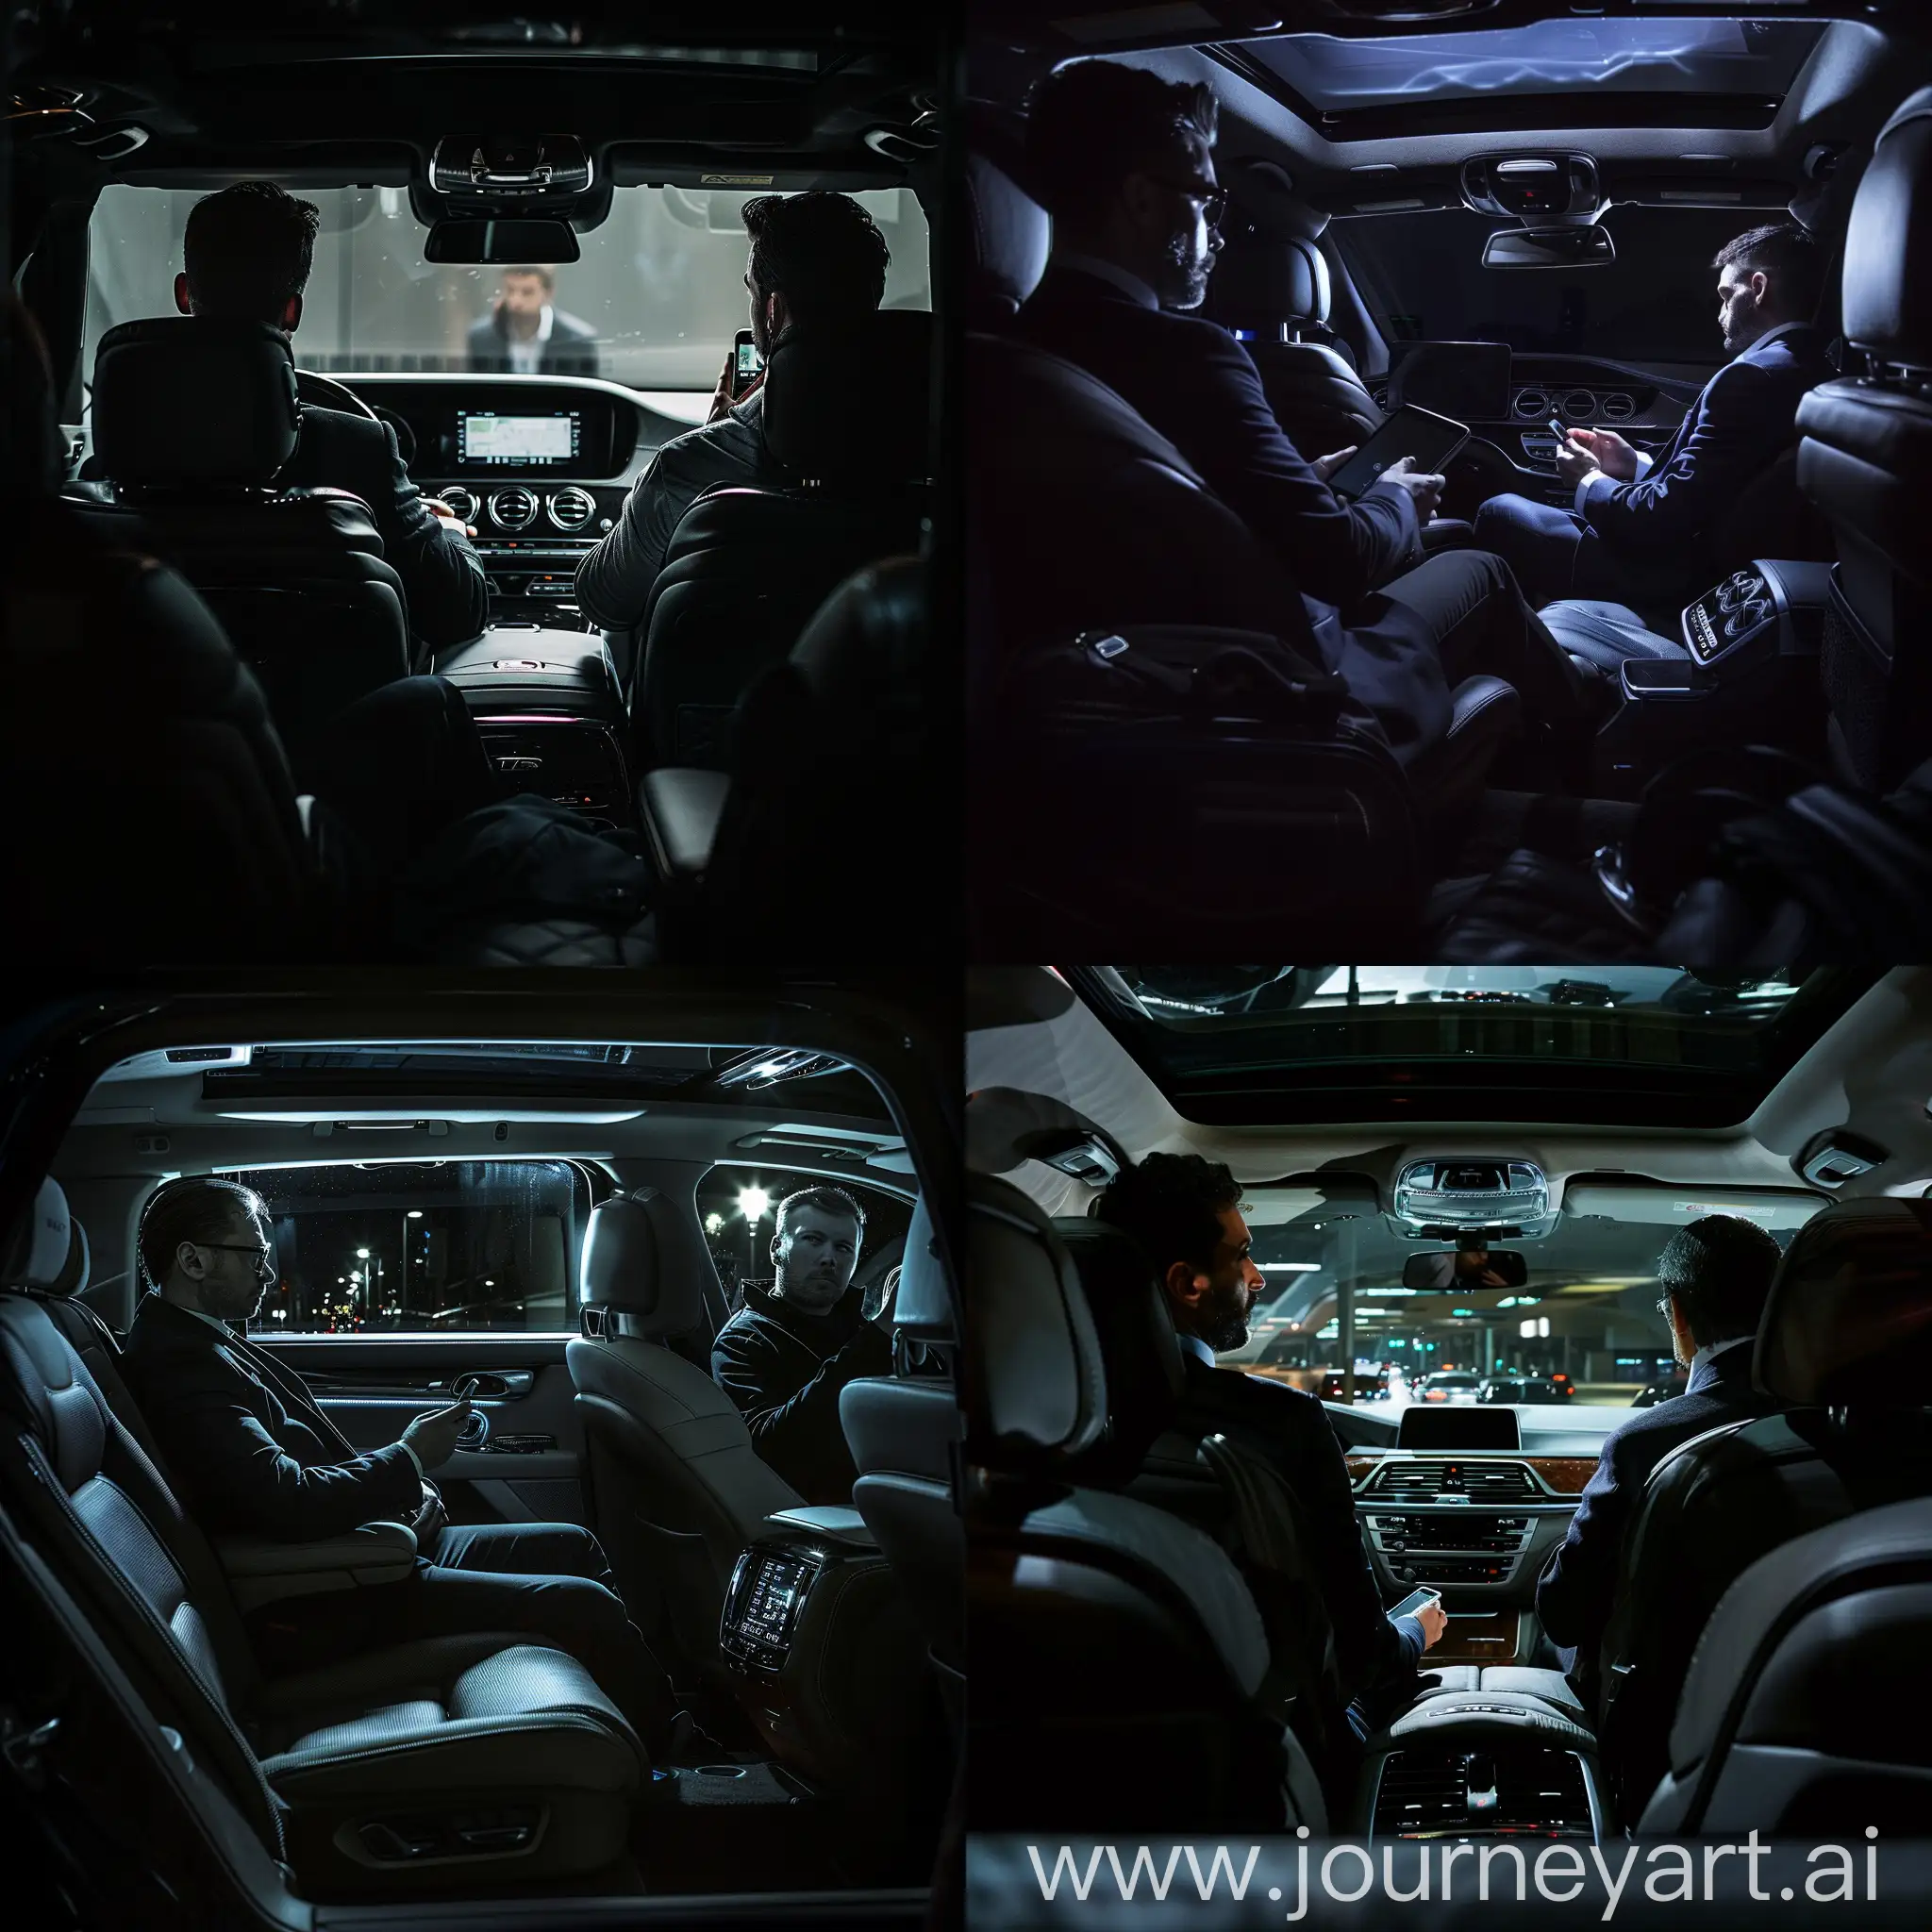 бизнес автомобиль, темный солон, вид с левого заднего пассажирского сидения, на нем сидит мужчина с телефоном, на водительском сидит мужчина с телефоном